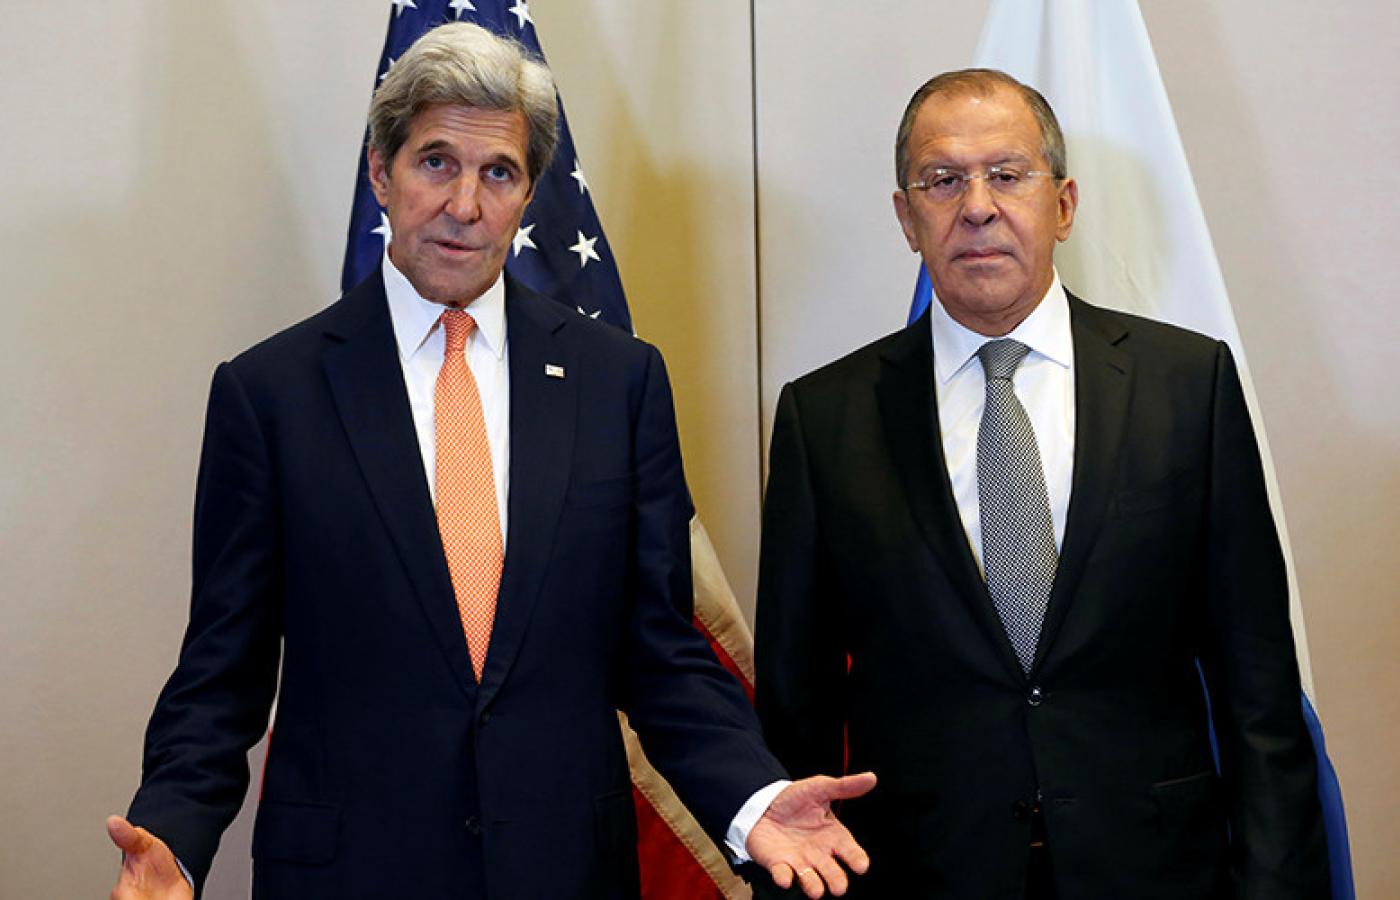 O porozumieniu poinformowali przedstawiciele USA oraz Rosji, John Kerry oraz Siergiej Ławrow.